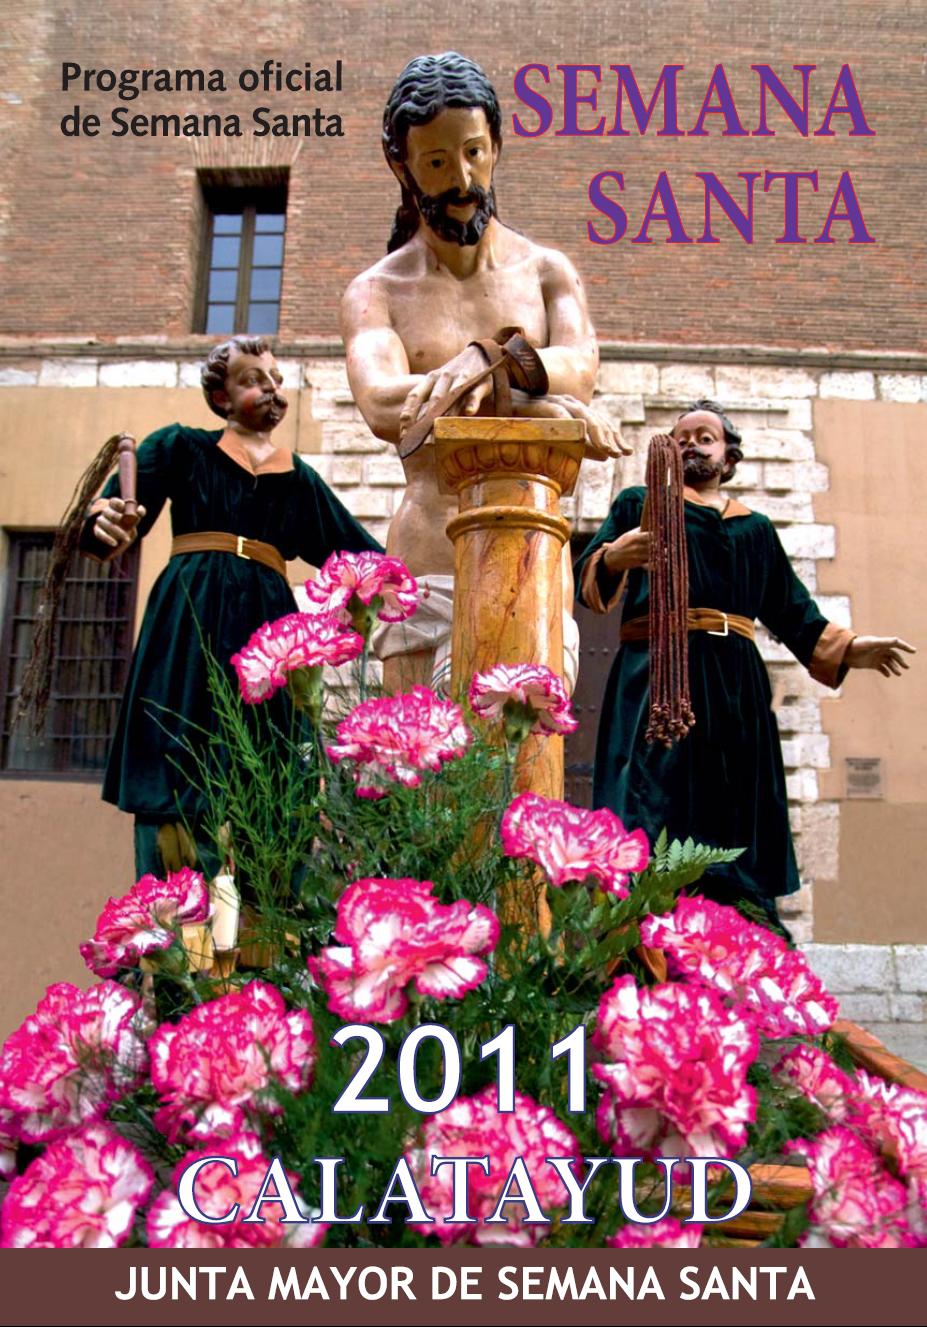 Semana Santa Calatayud 2011